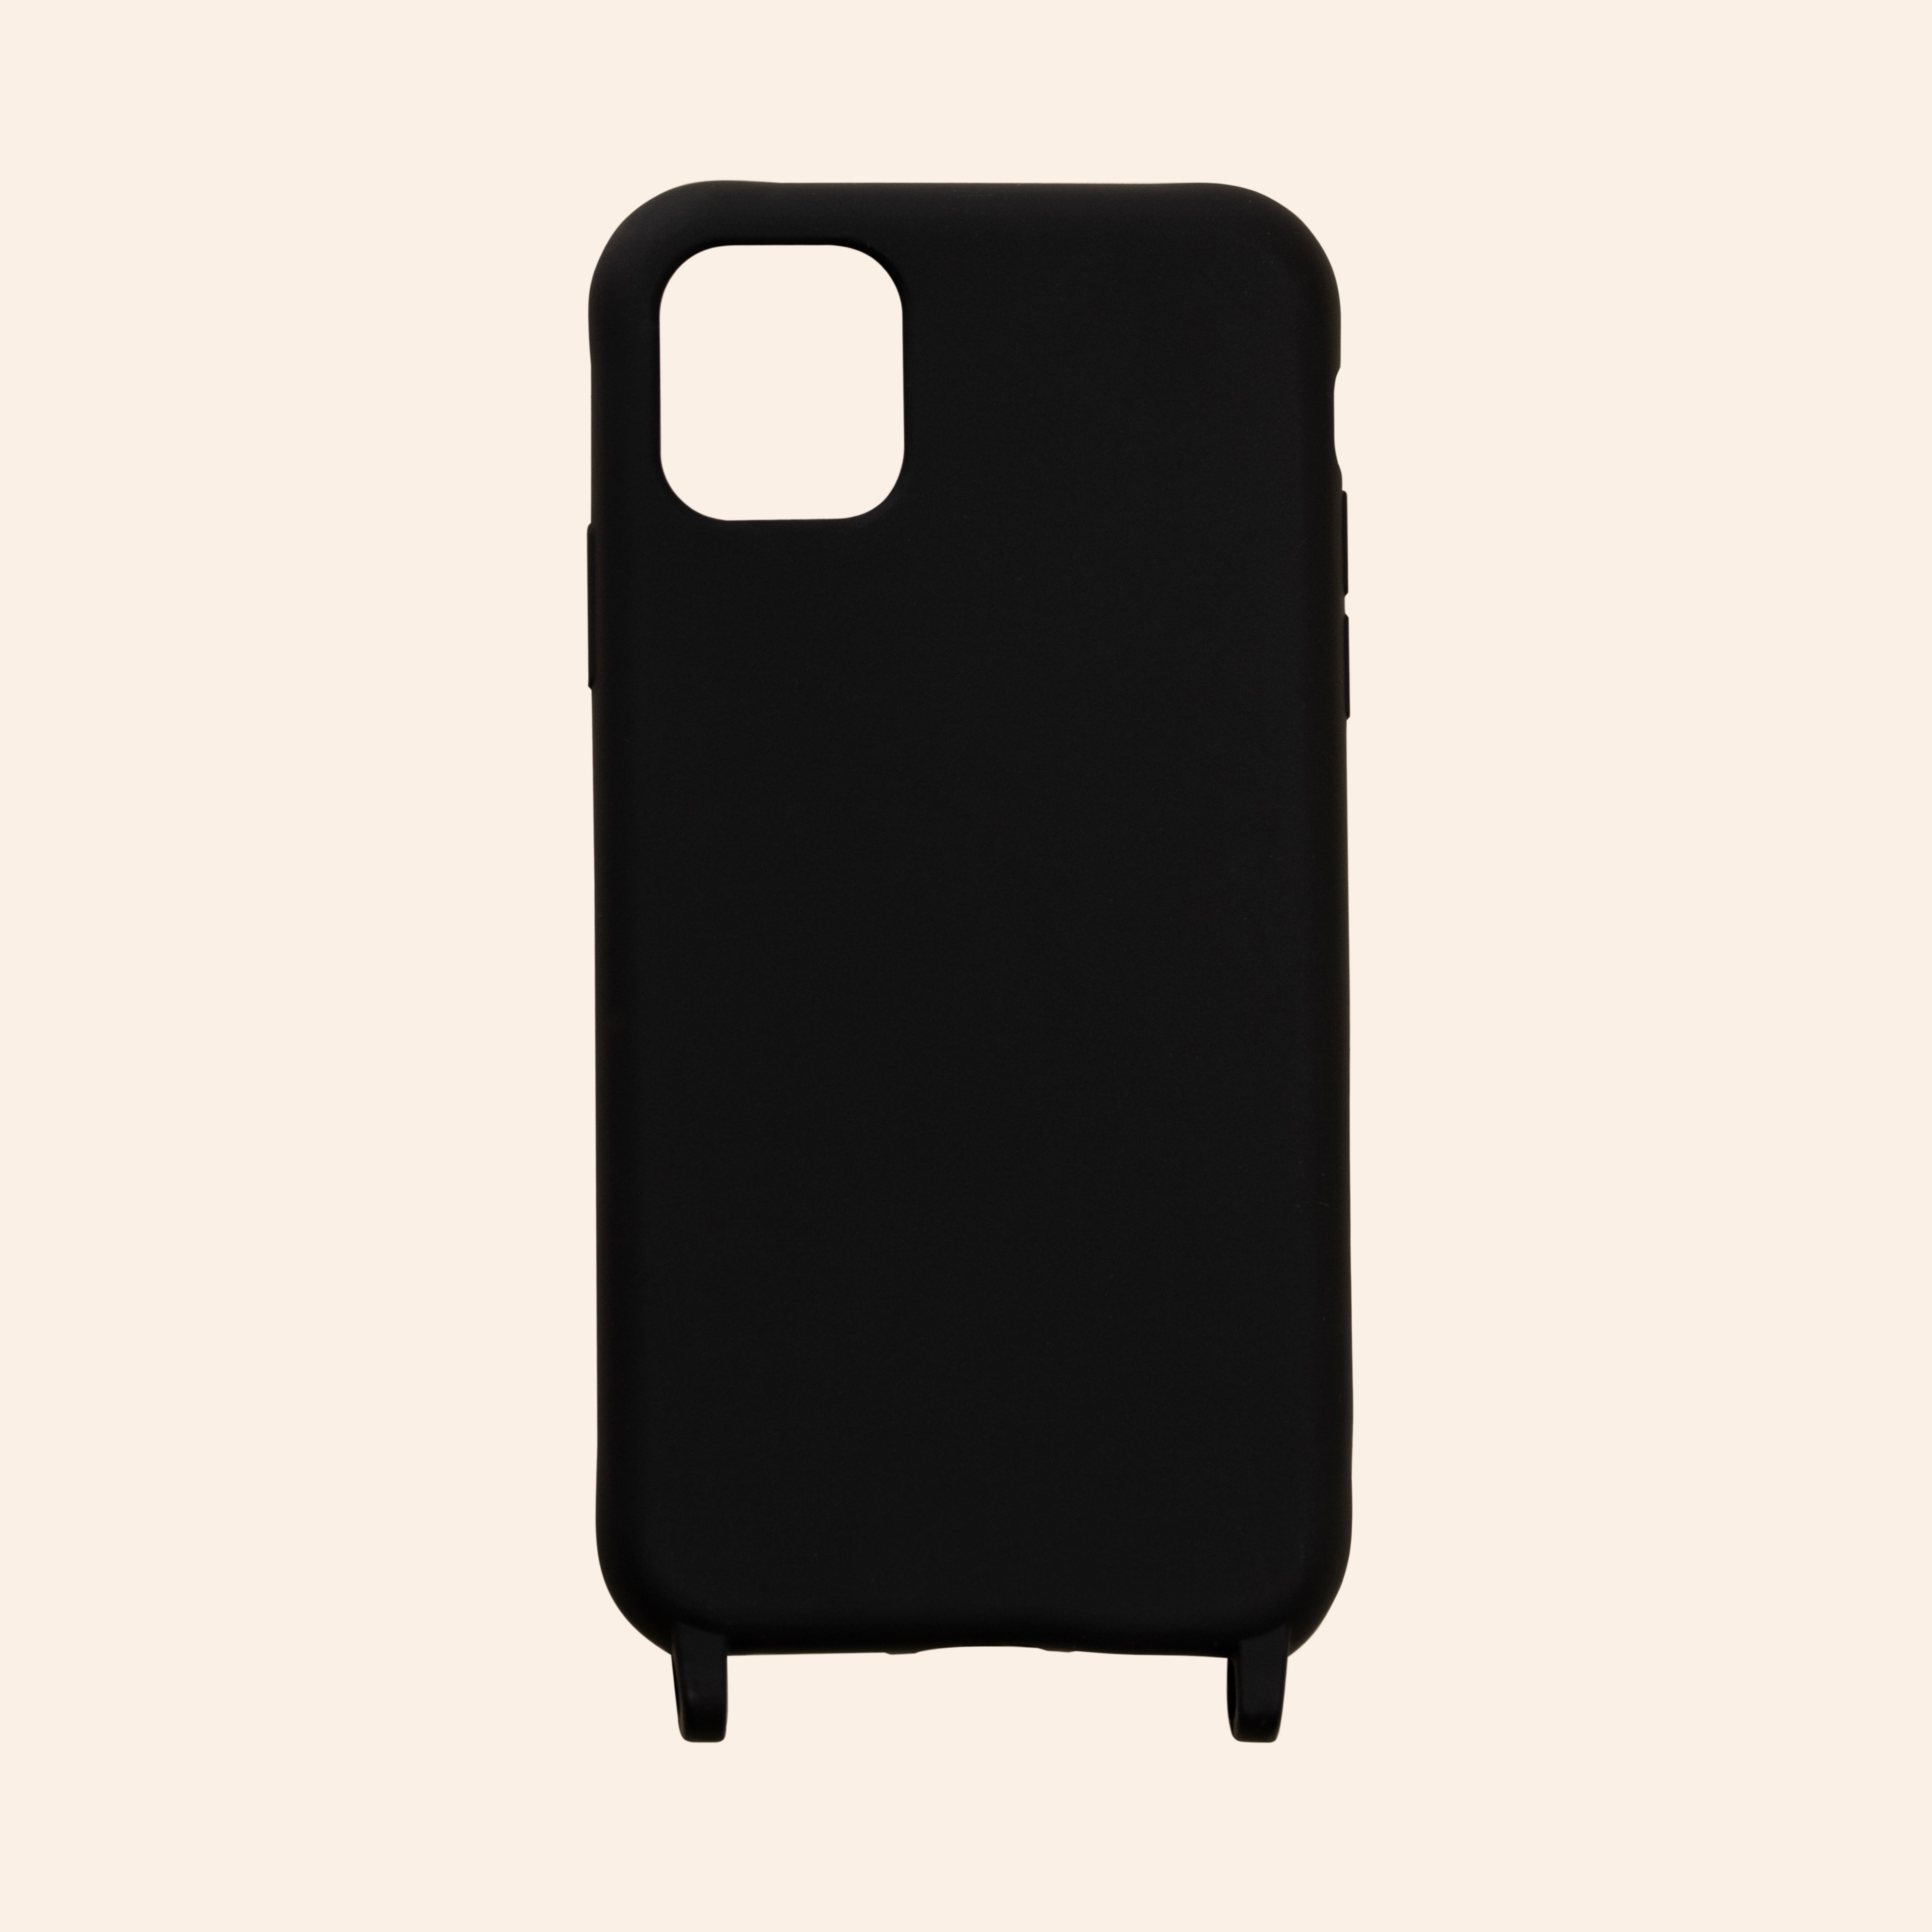 iPhone phone case black